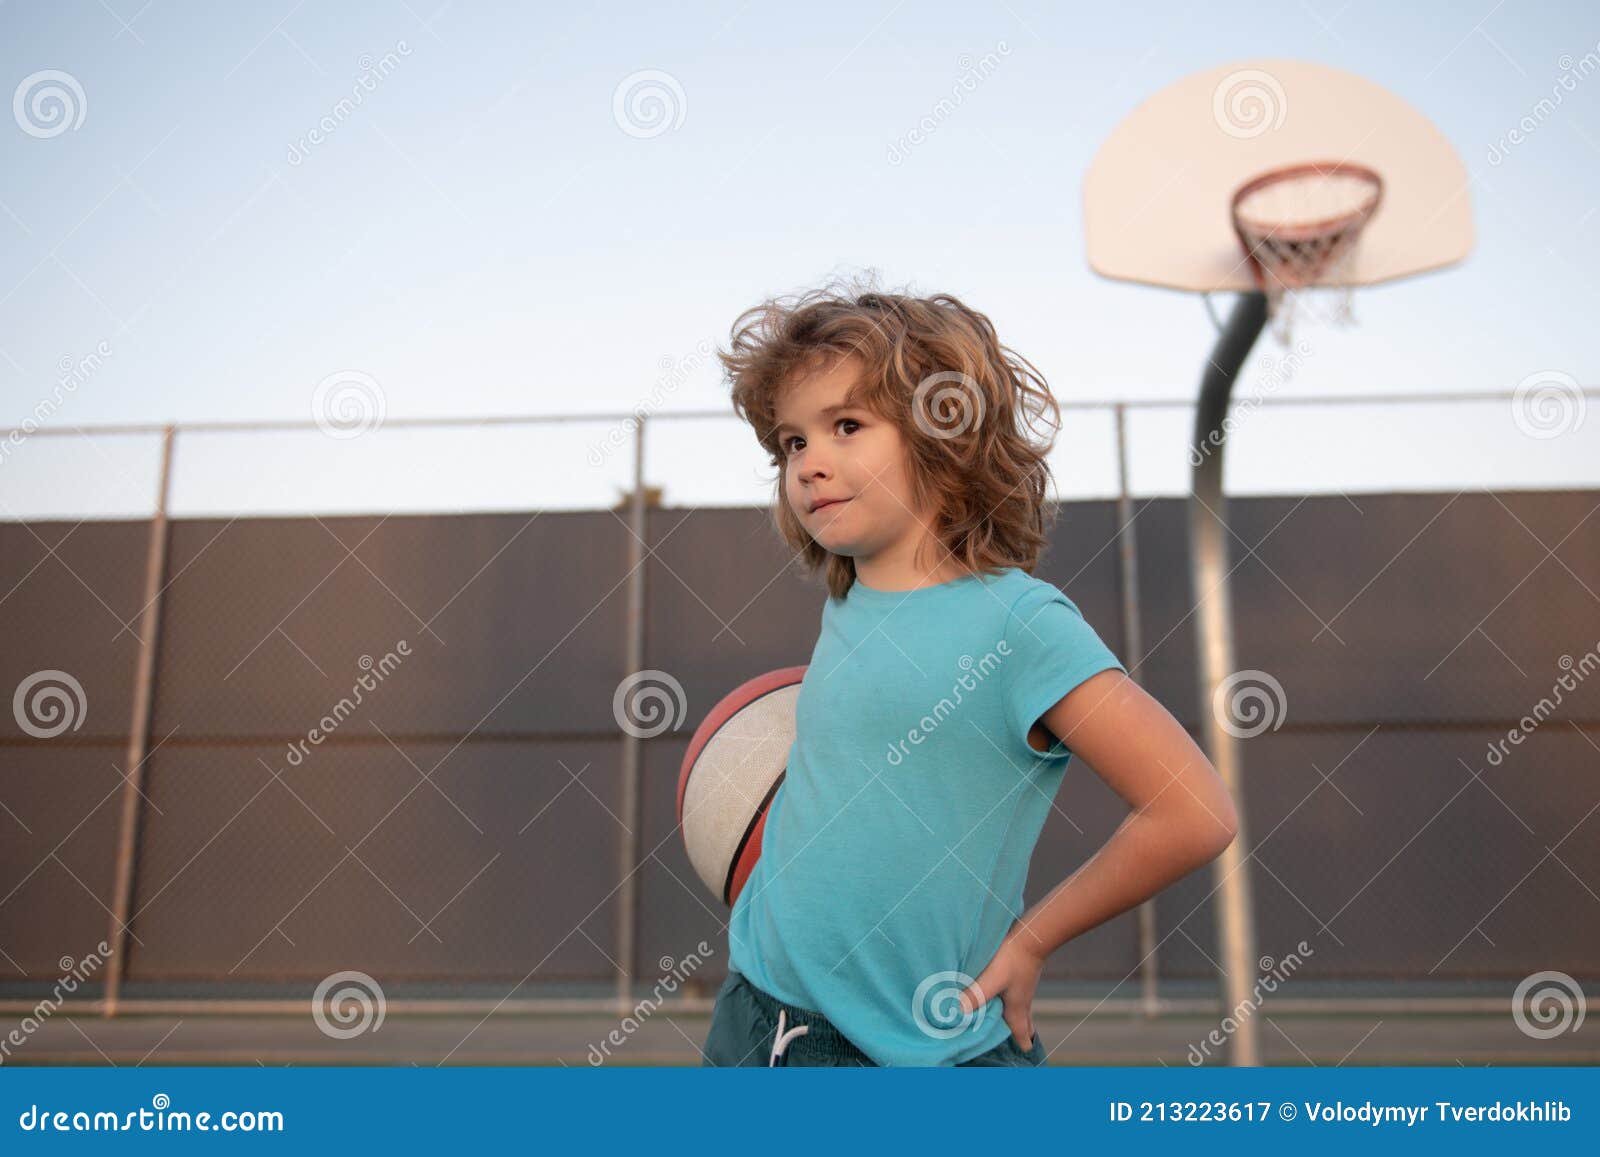 Jovem praticando esportes, jogando basquete ao nascer do sol